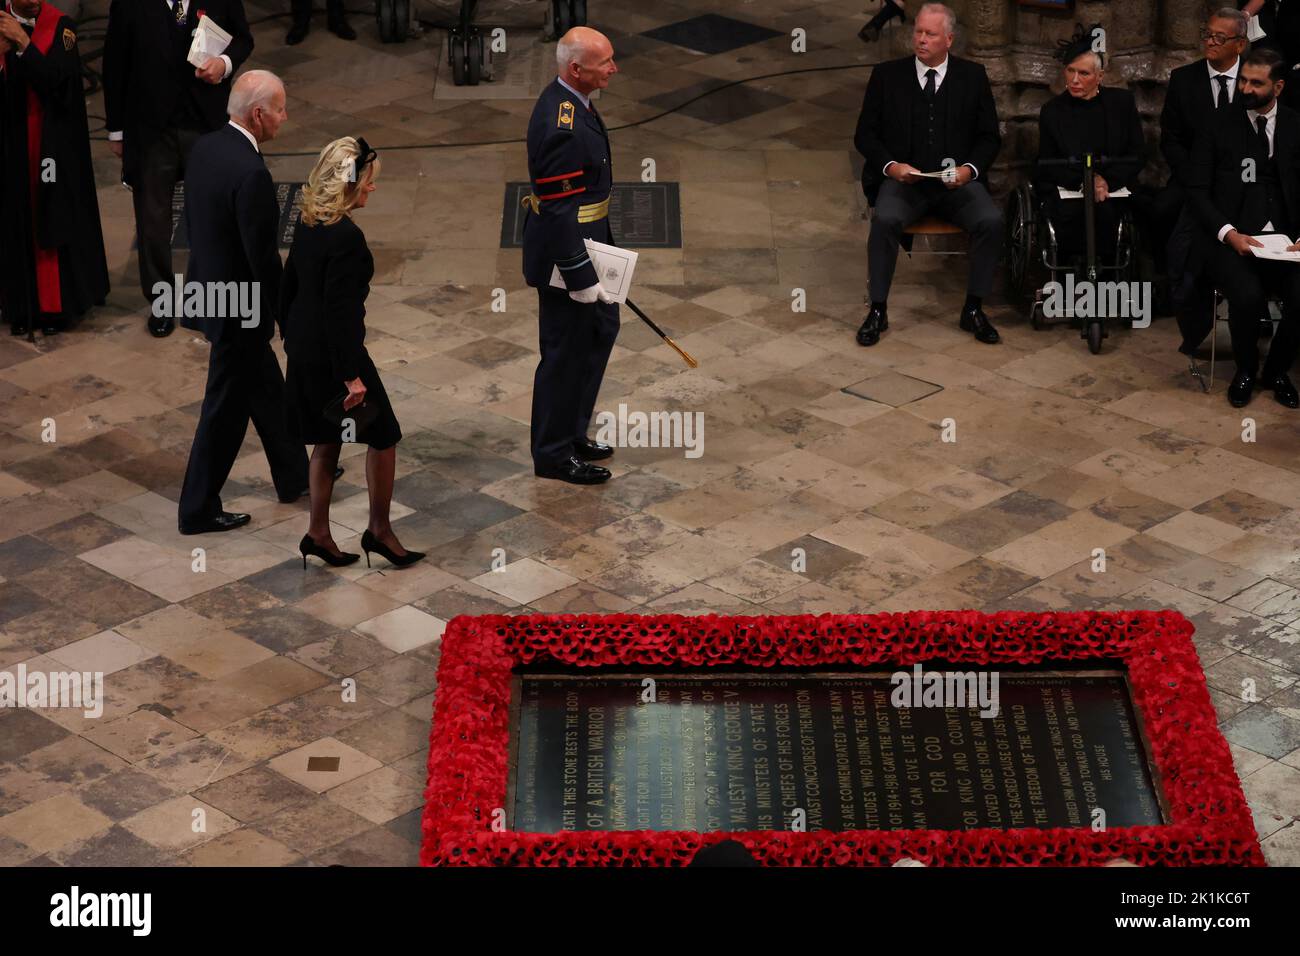 Der Präsident der Vereinigten Staaten, Joe Biden, und die First Lady Jill Biden kommen zum State Funeral von Queen Elizabeth II, das in Westminster Abbey, London, stattfindet. Bilddatum: Montag, 19. September 2022. Stockfoto